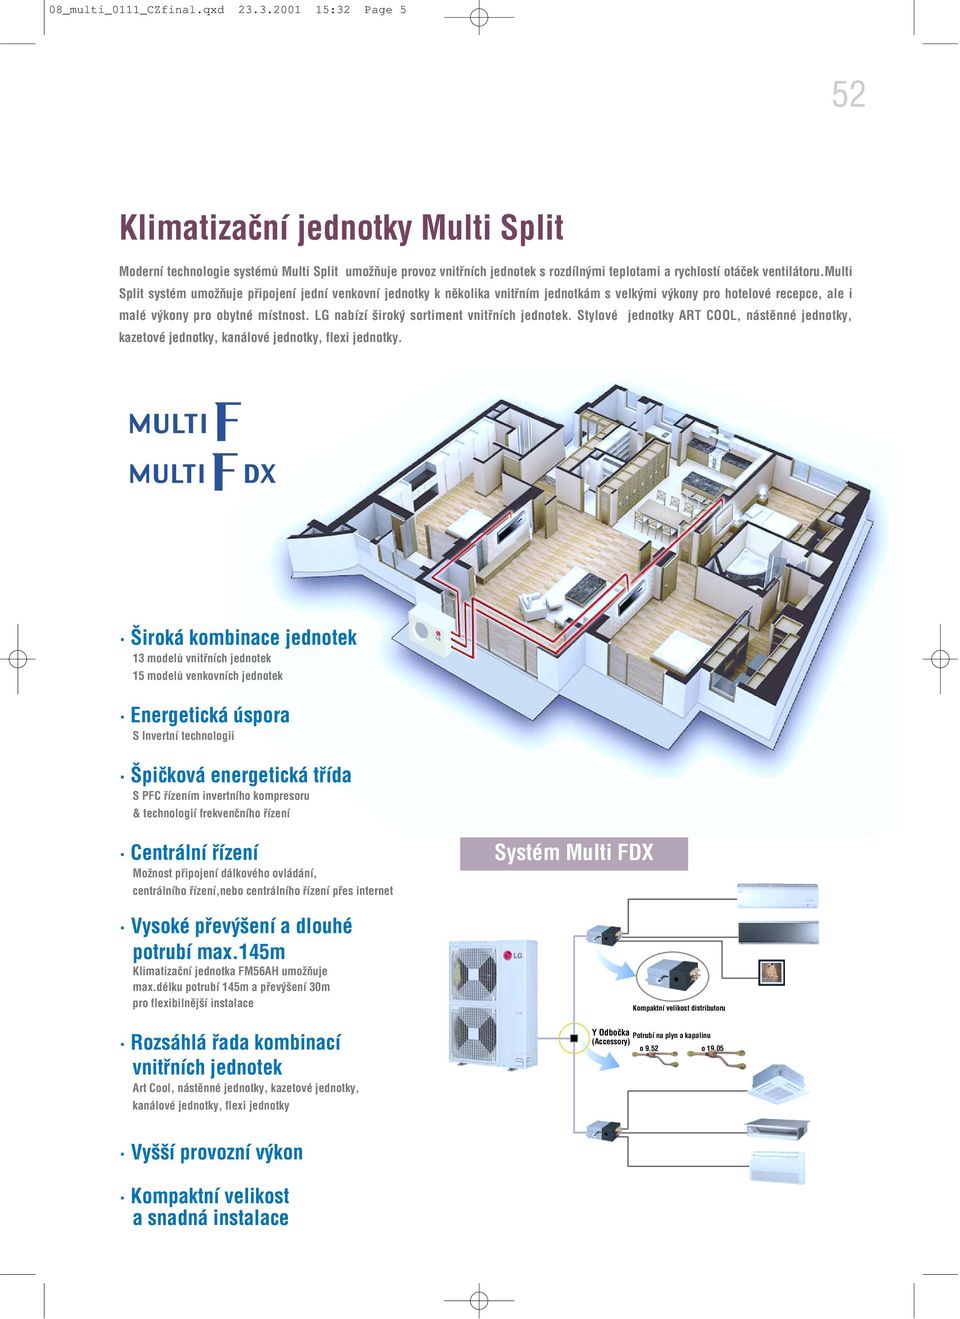 multi Split systém umožňuje připojení jední venkovní jednotky k několika vnitřním jednotkám s velkými výkony pro hotelové recepce, ale i malé výkony pro obytné místnost.